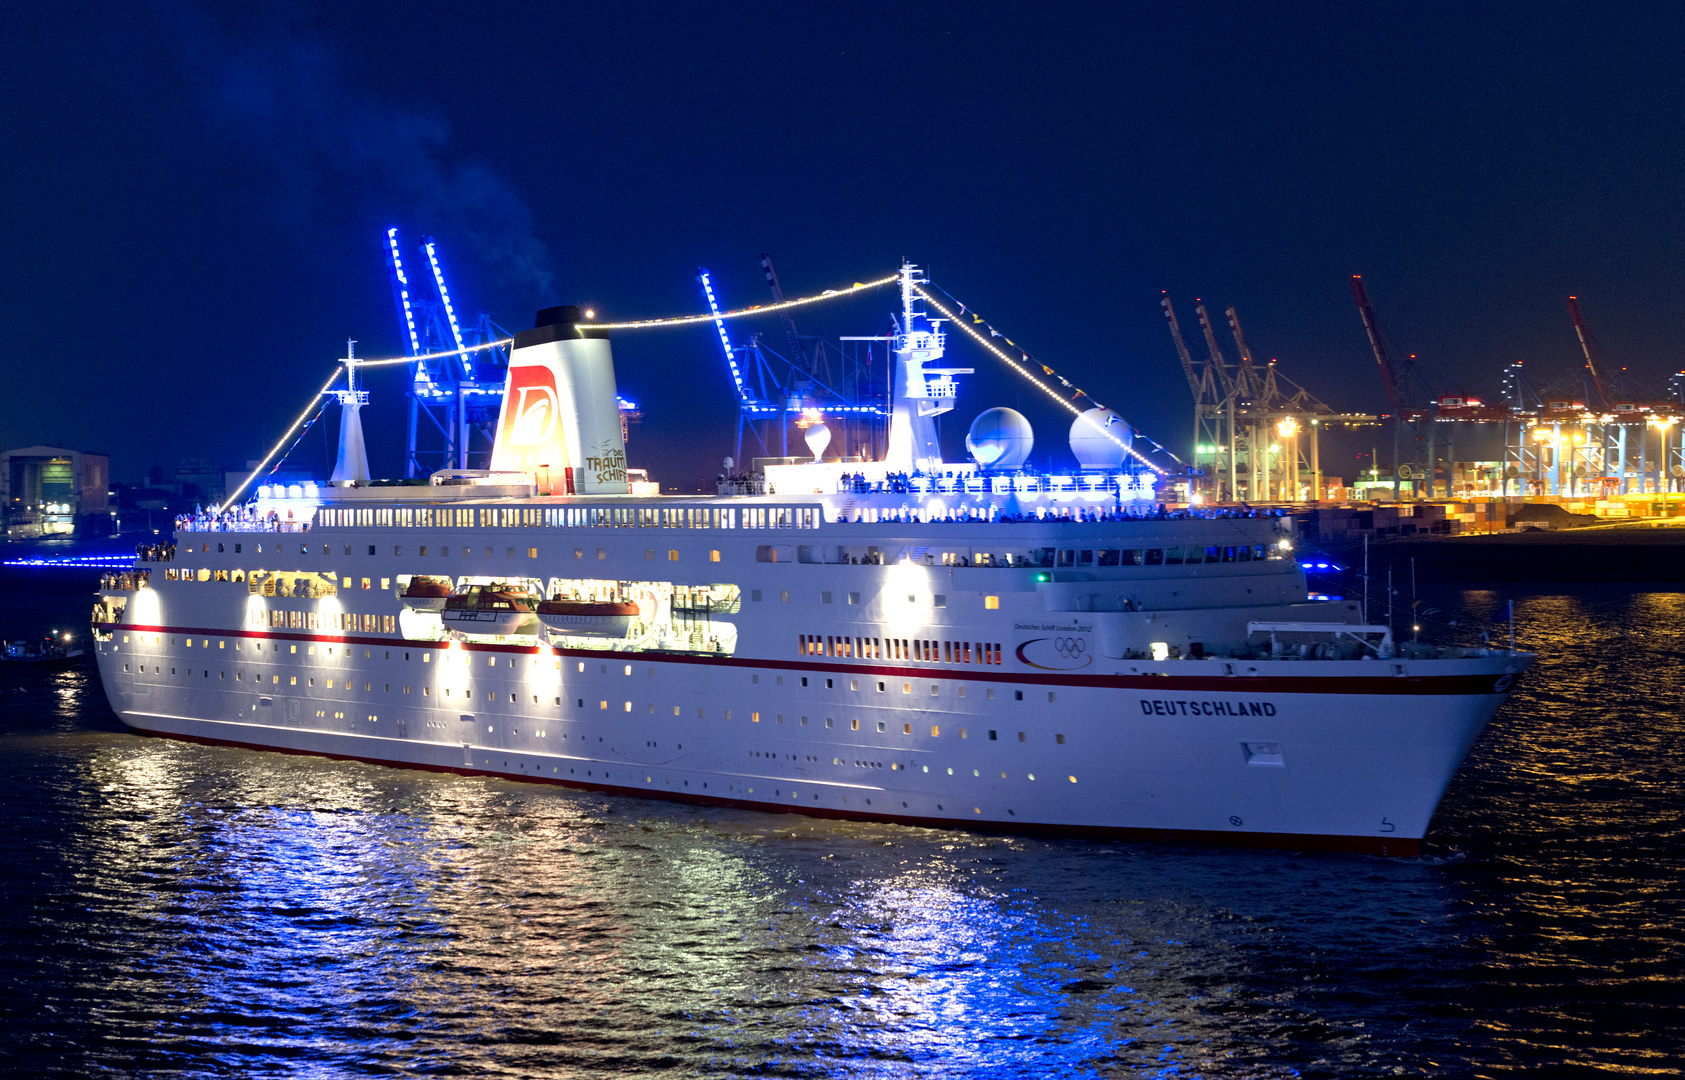 Das Traumschiff, die MS DEUTSCHLAND, war das deutsche Olympia-Schiff in London 2012